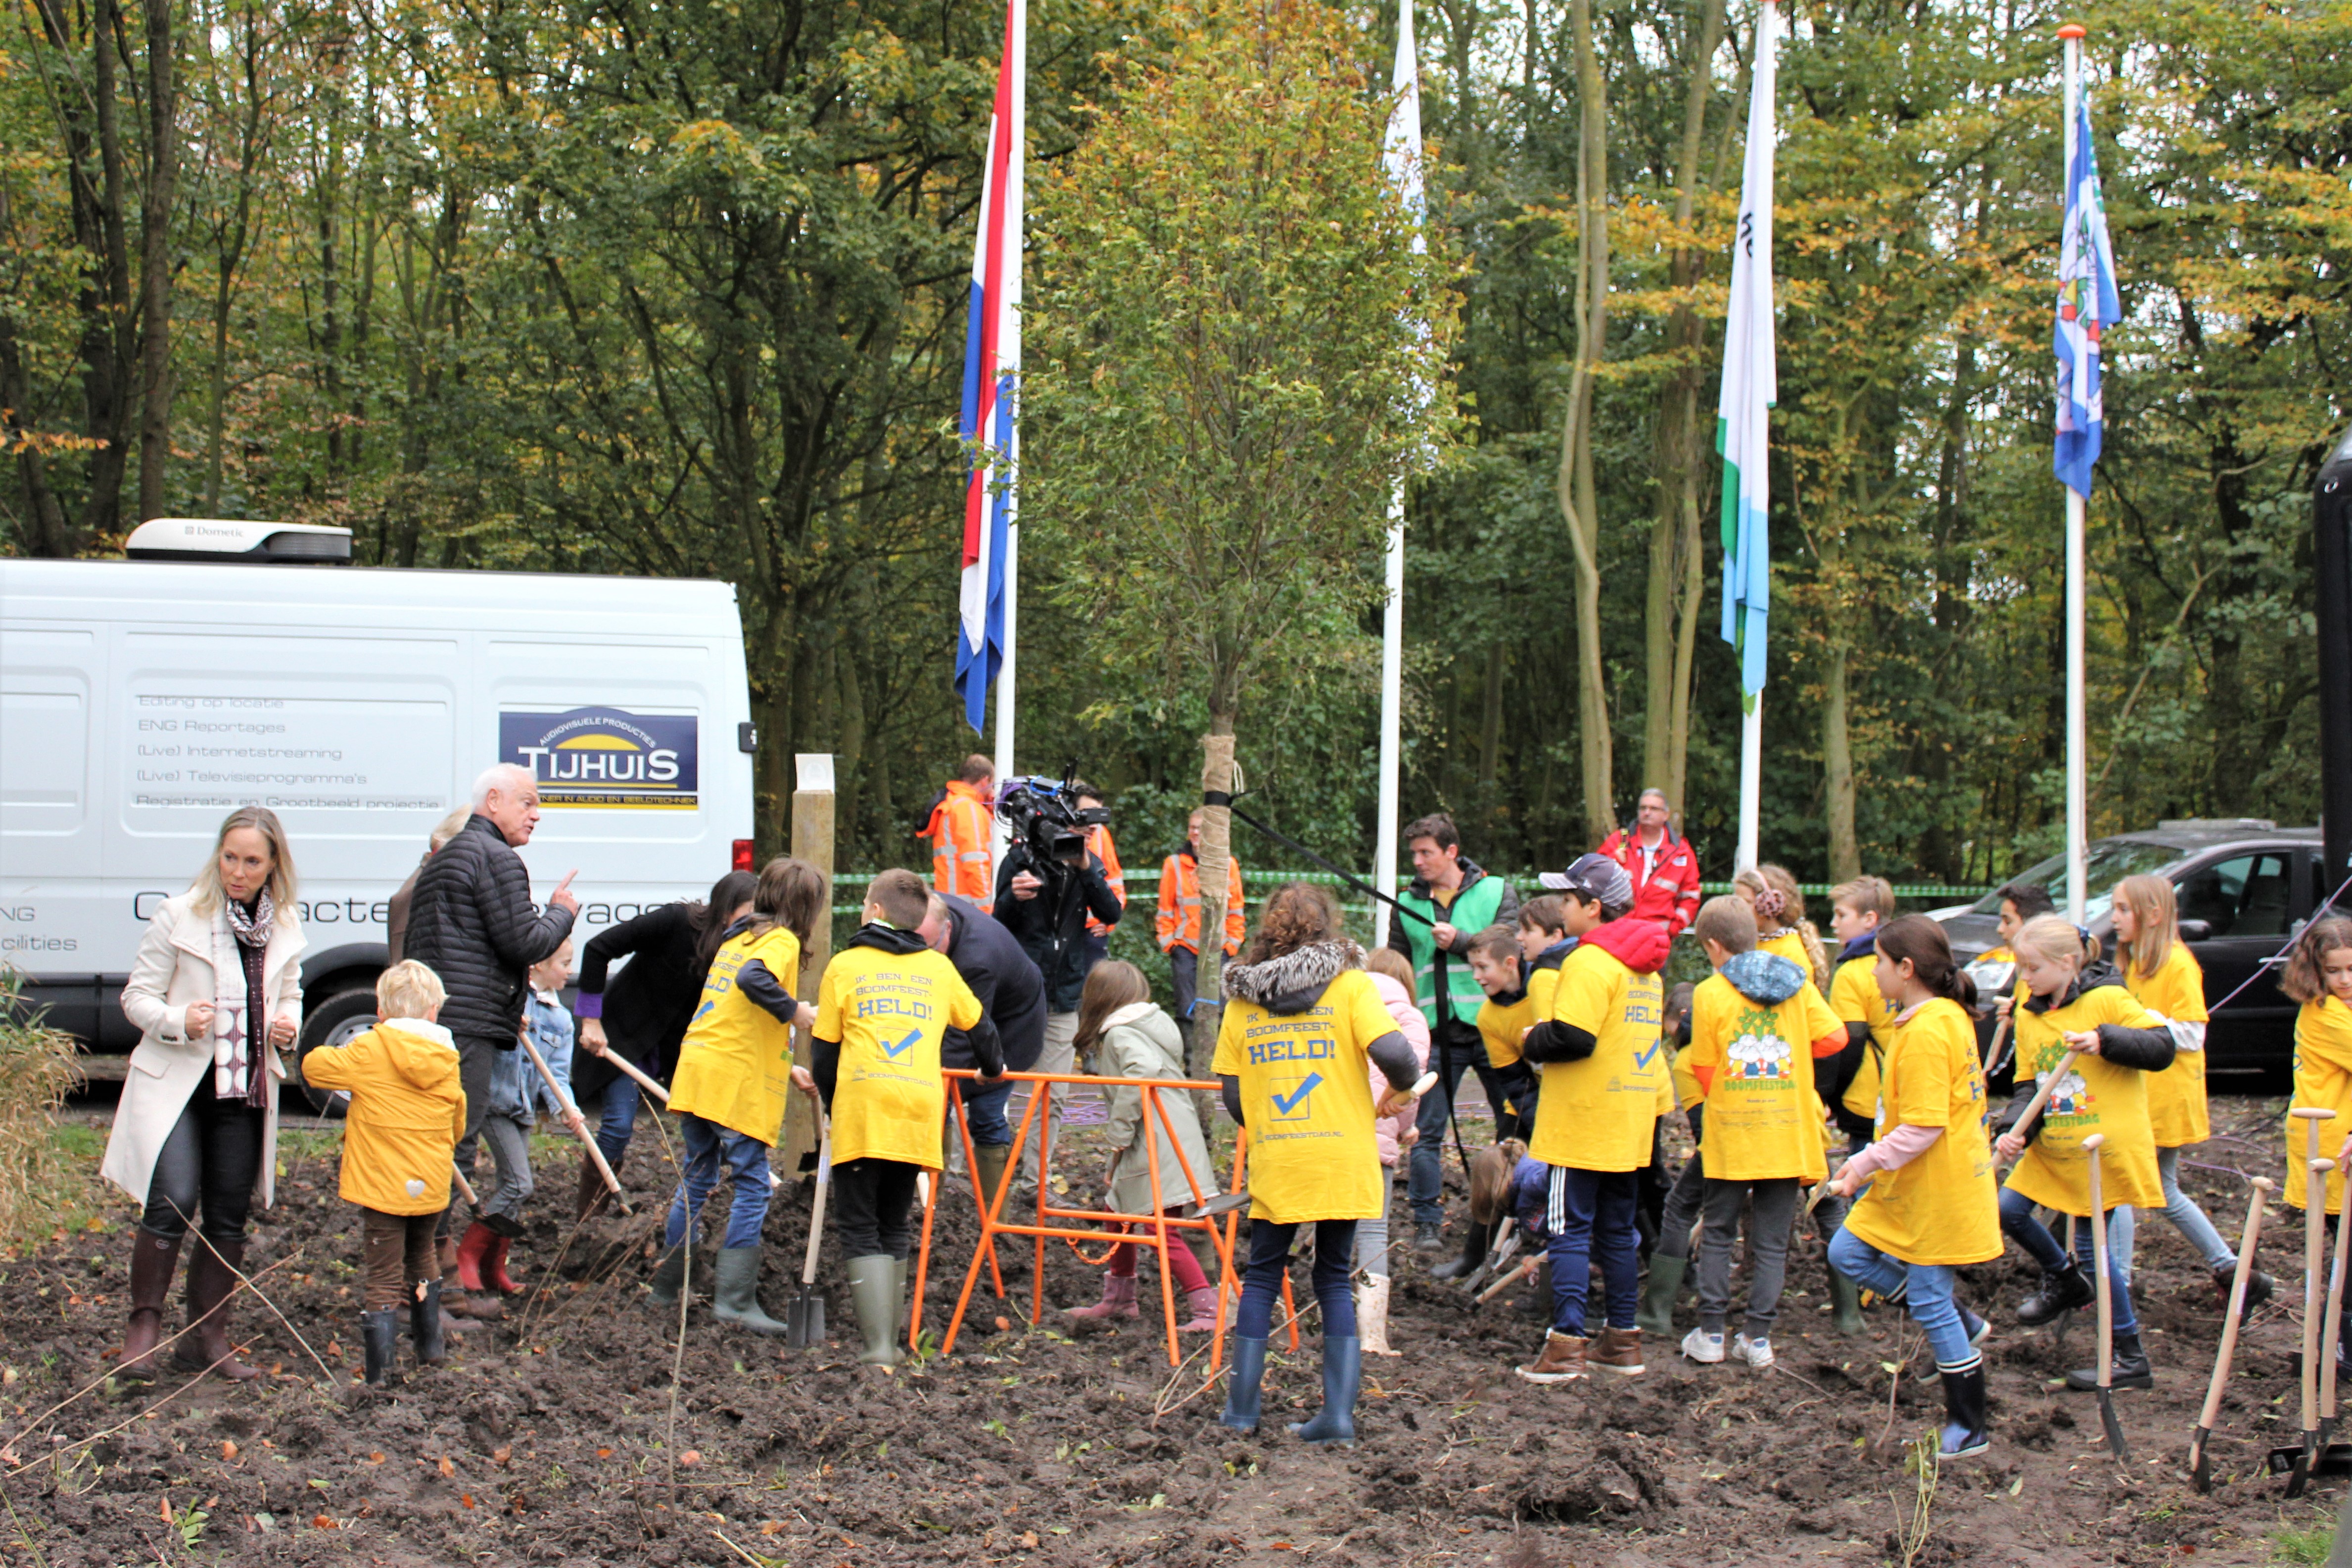 Boomfeestdag: Prinses Irene opent ‘eigen’ Irenebos in Alphen aan den Rijn